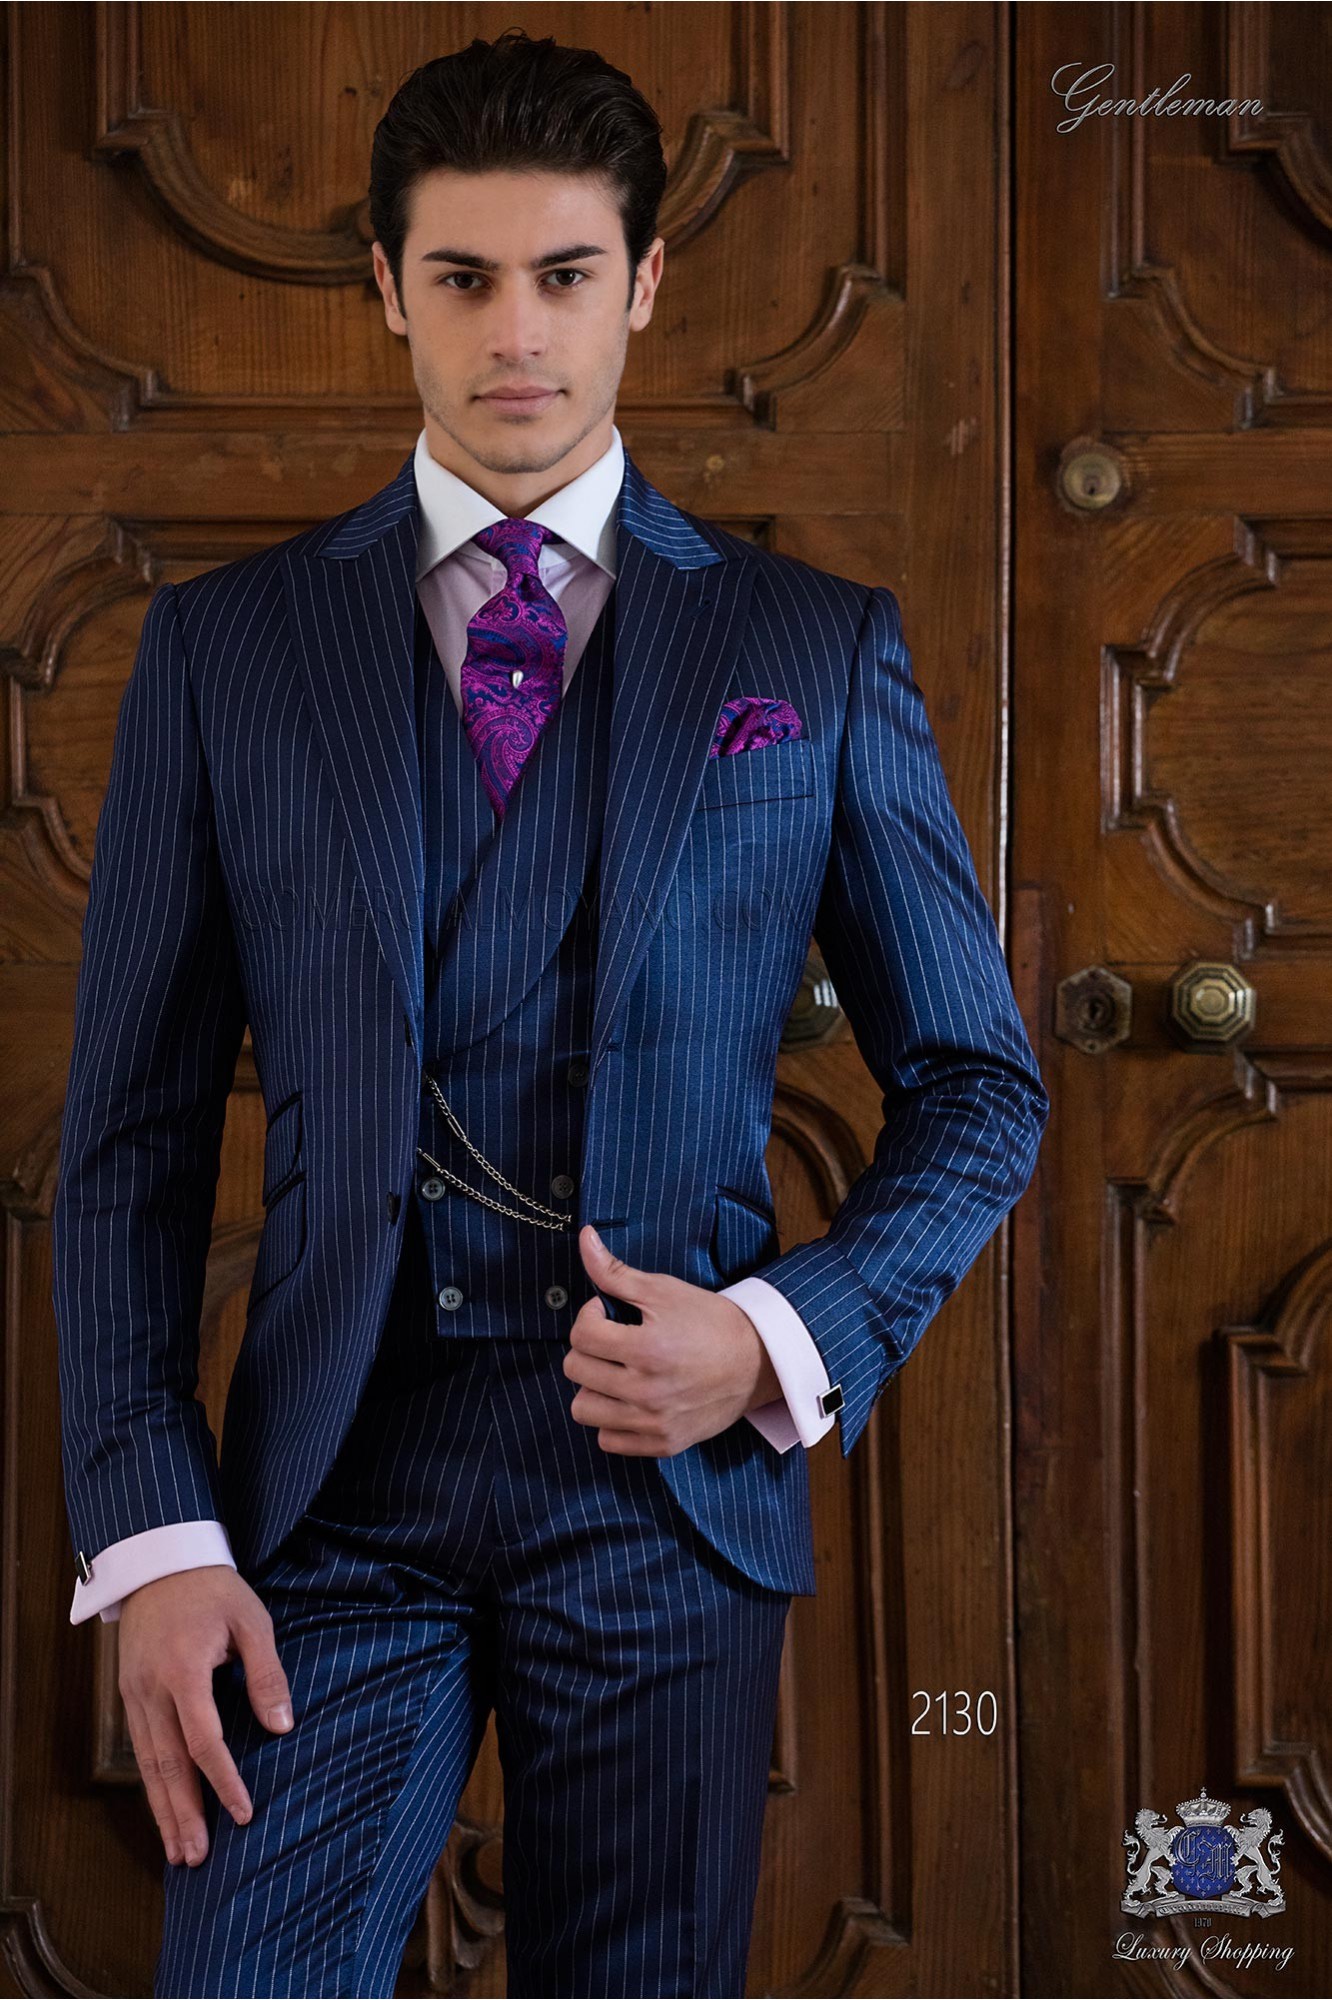 Traje diplomático azul royal modelo: 2130 Mario Moyano colección Gentleman